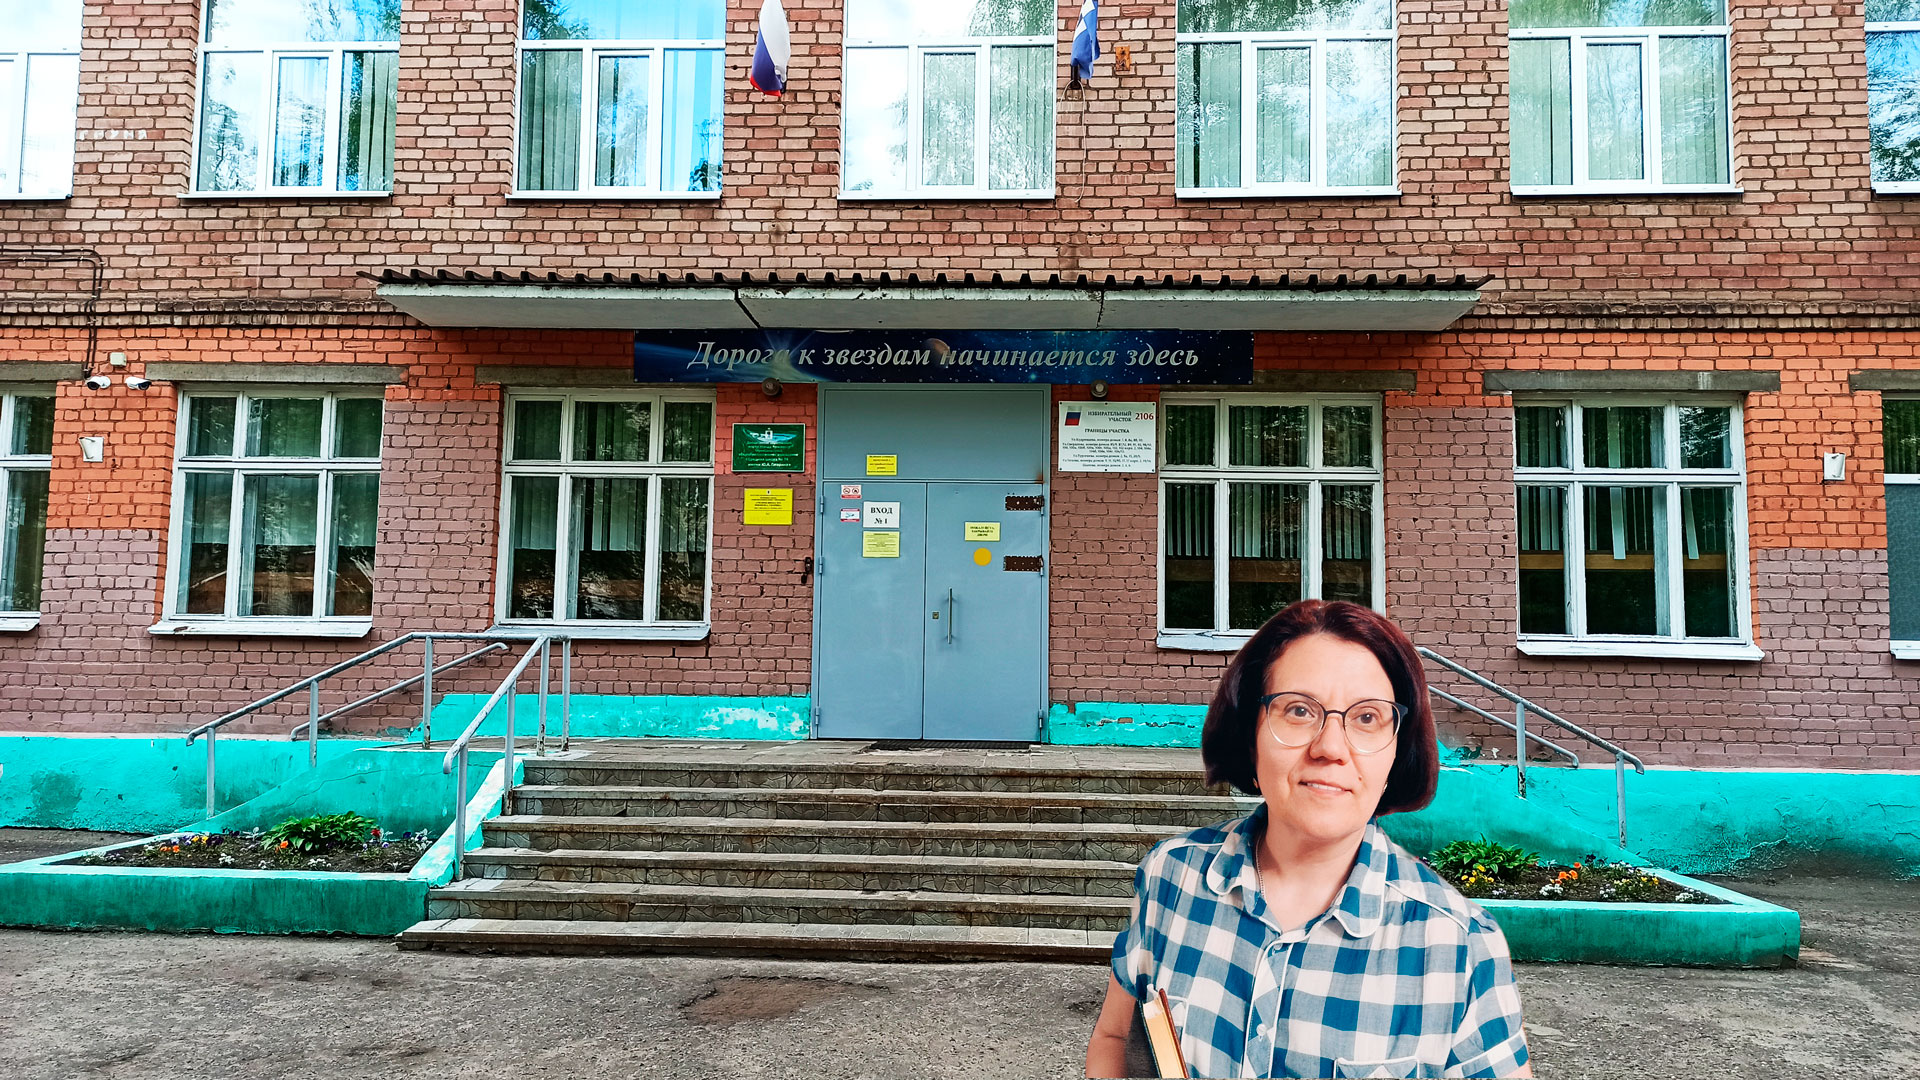 Школа 74 Ярославль: центральный вход в здание школьной организации.